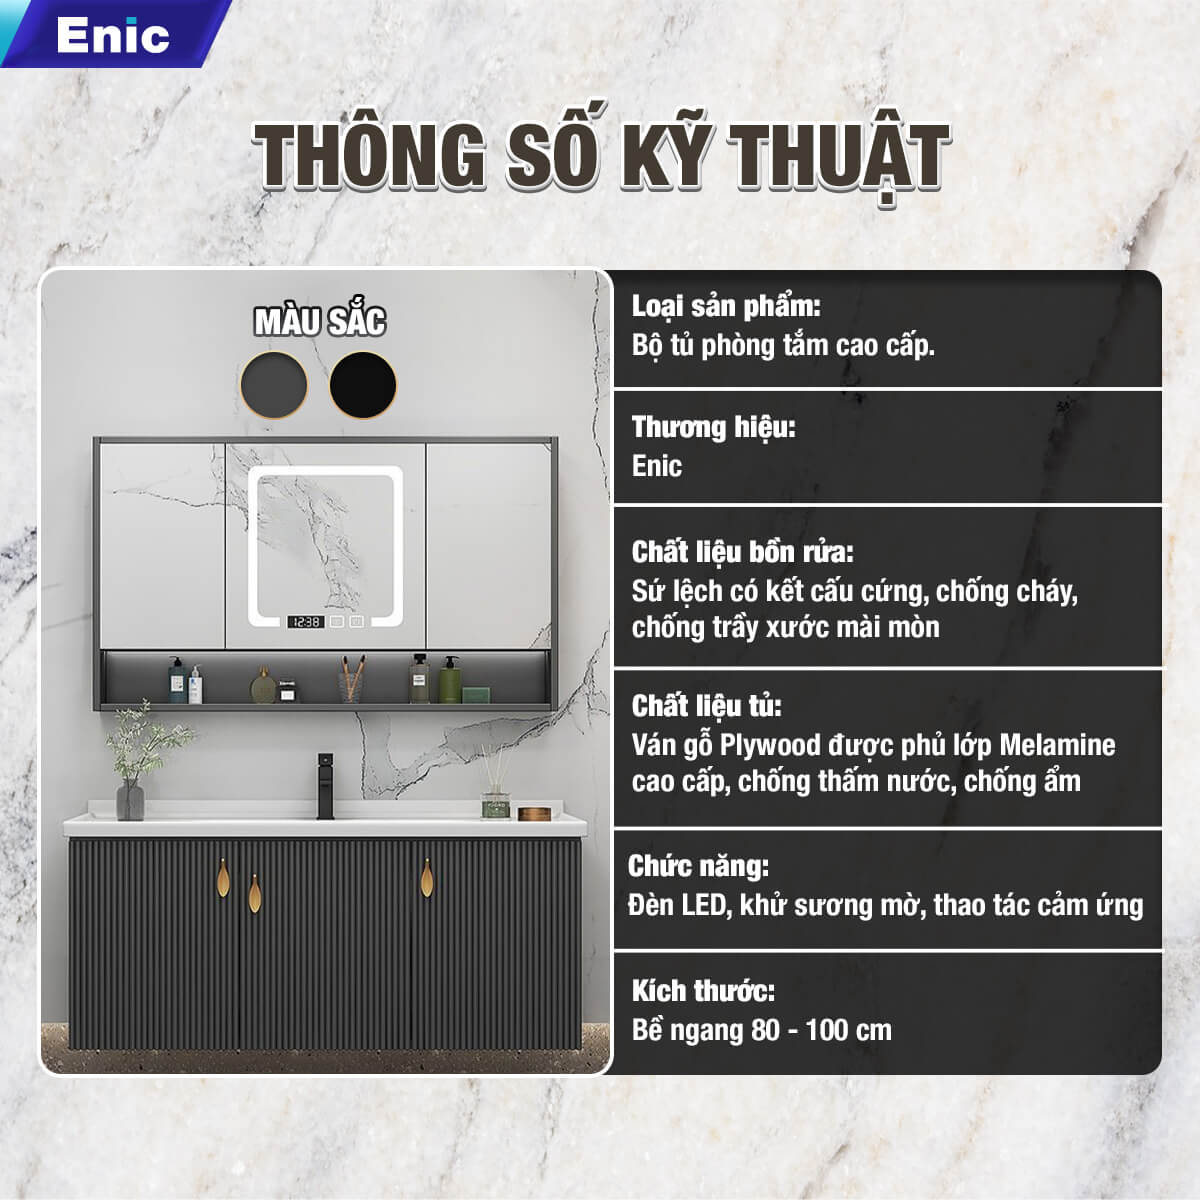 Bộ tủ phòng tắm cao cấp Enic LS - 100cm Gương Thông Minh - 37